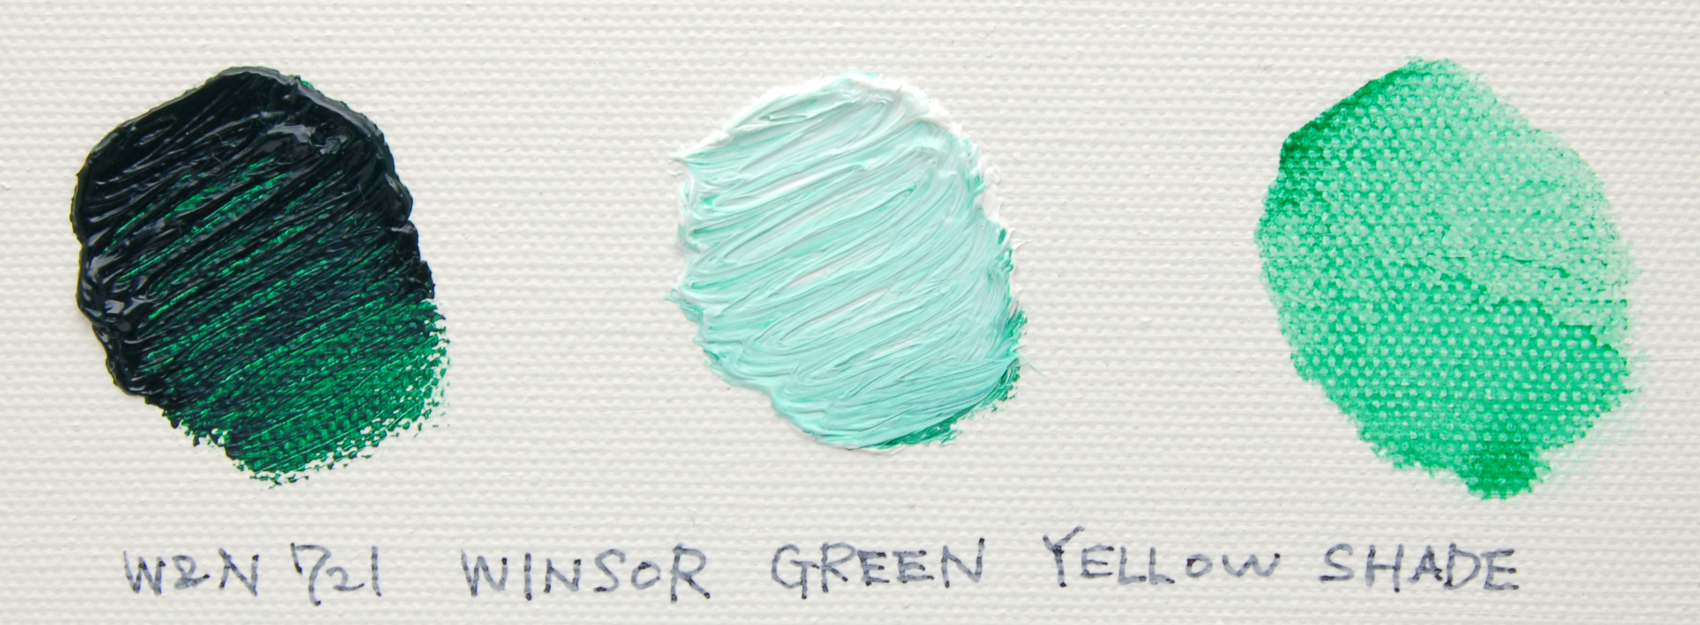 ウィンザーグリーンイエローシェード/Winsor Green (Yellow shade)